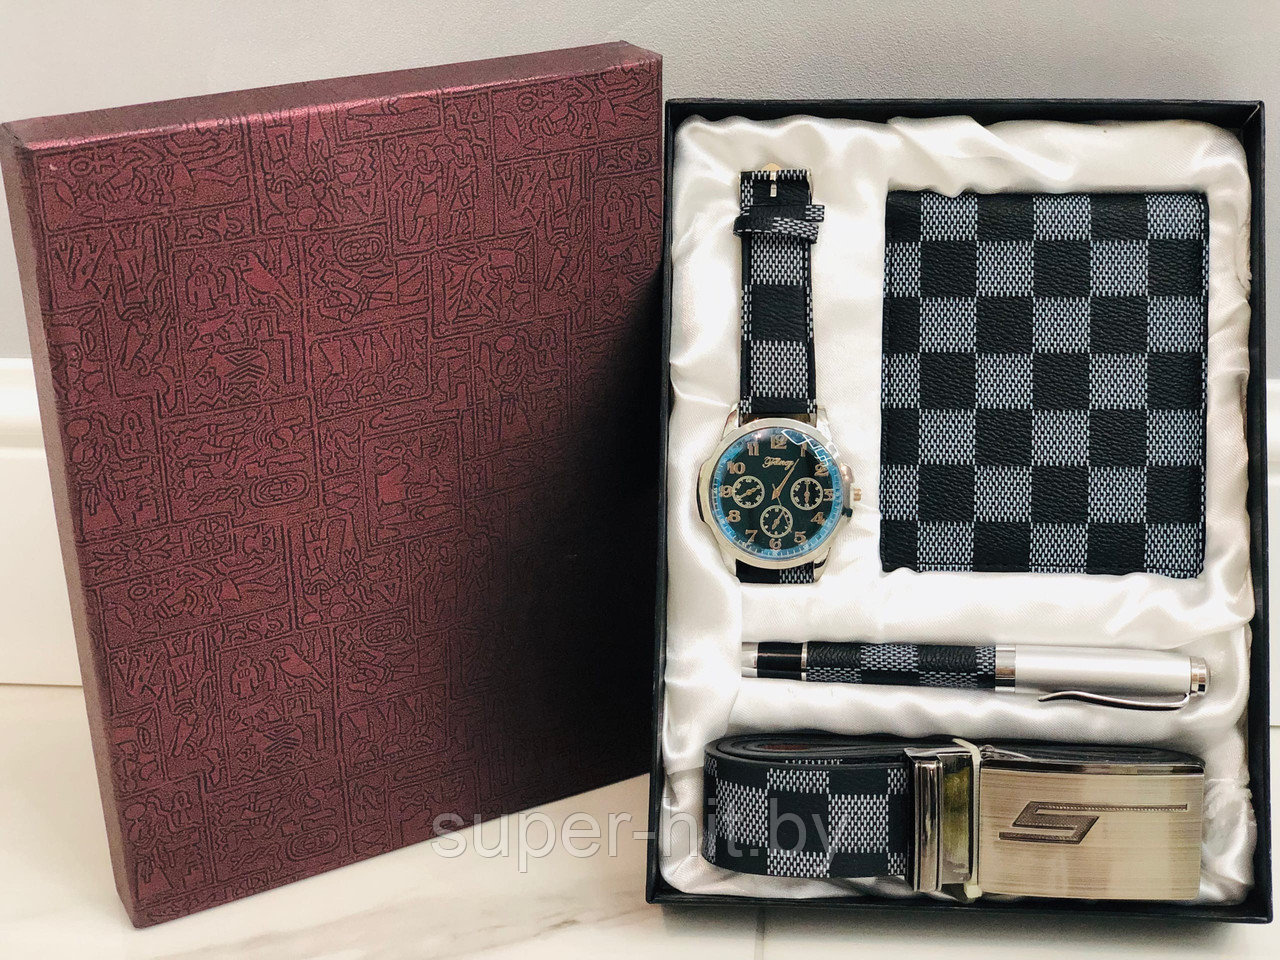 Подарочный набор мужской( Часы, ремень,кошелек, ручка)